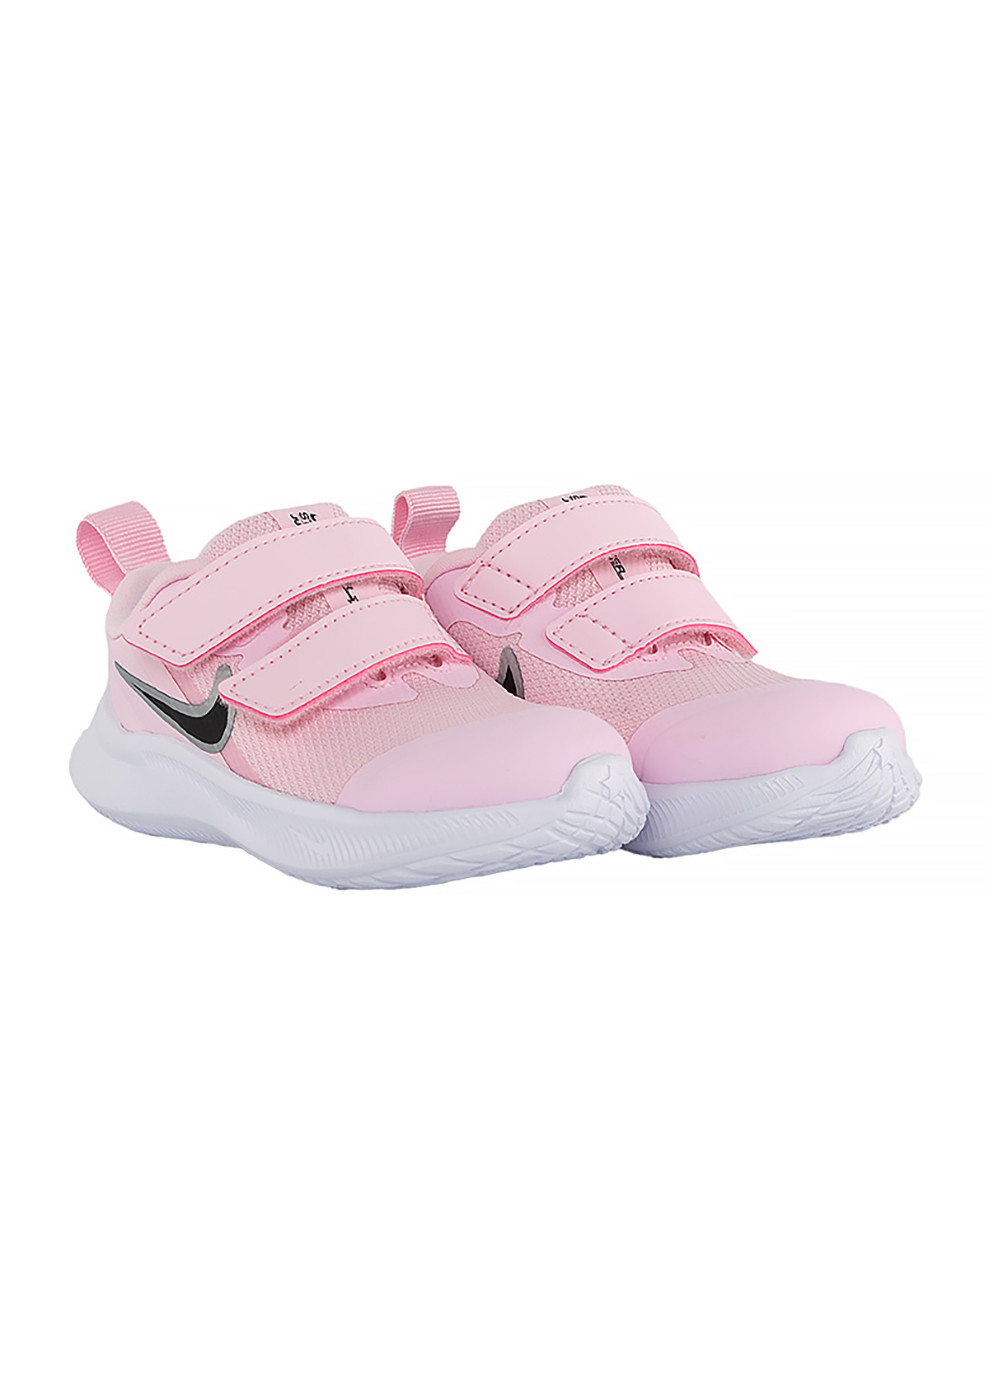 Розовые демисезонные детские кроссовки star runner 3 (tdv) розовый Nike